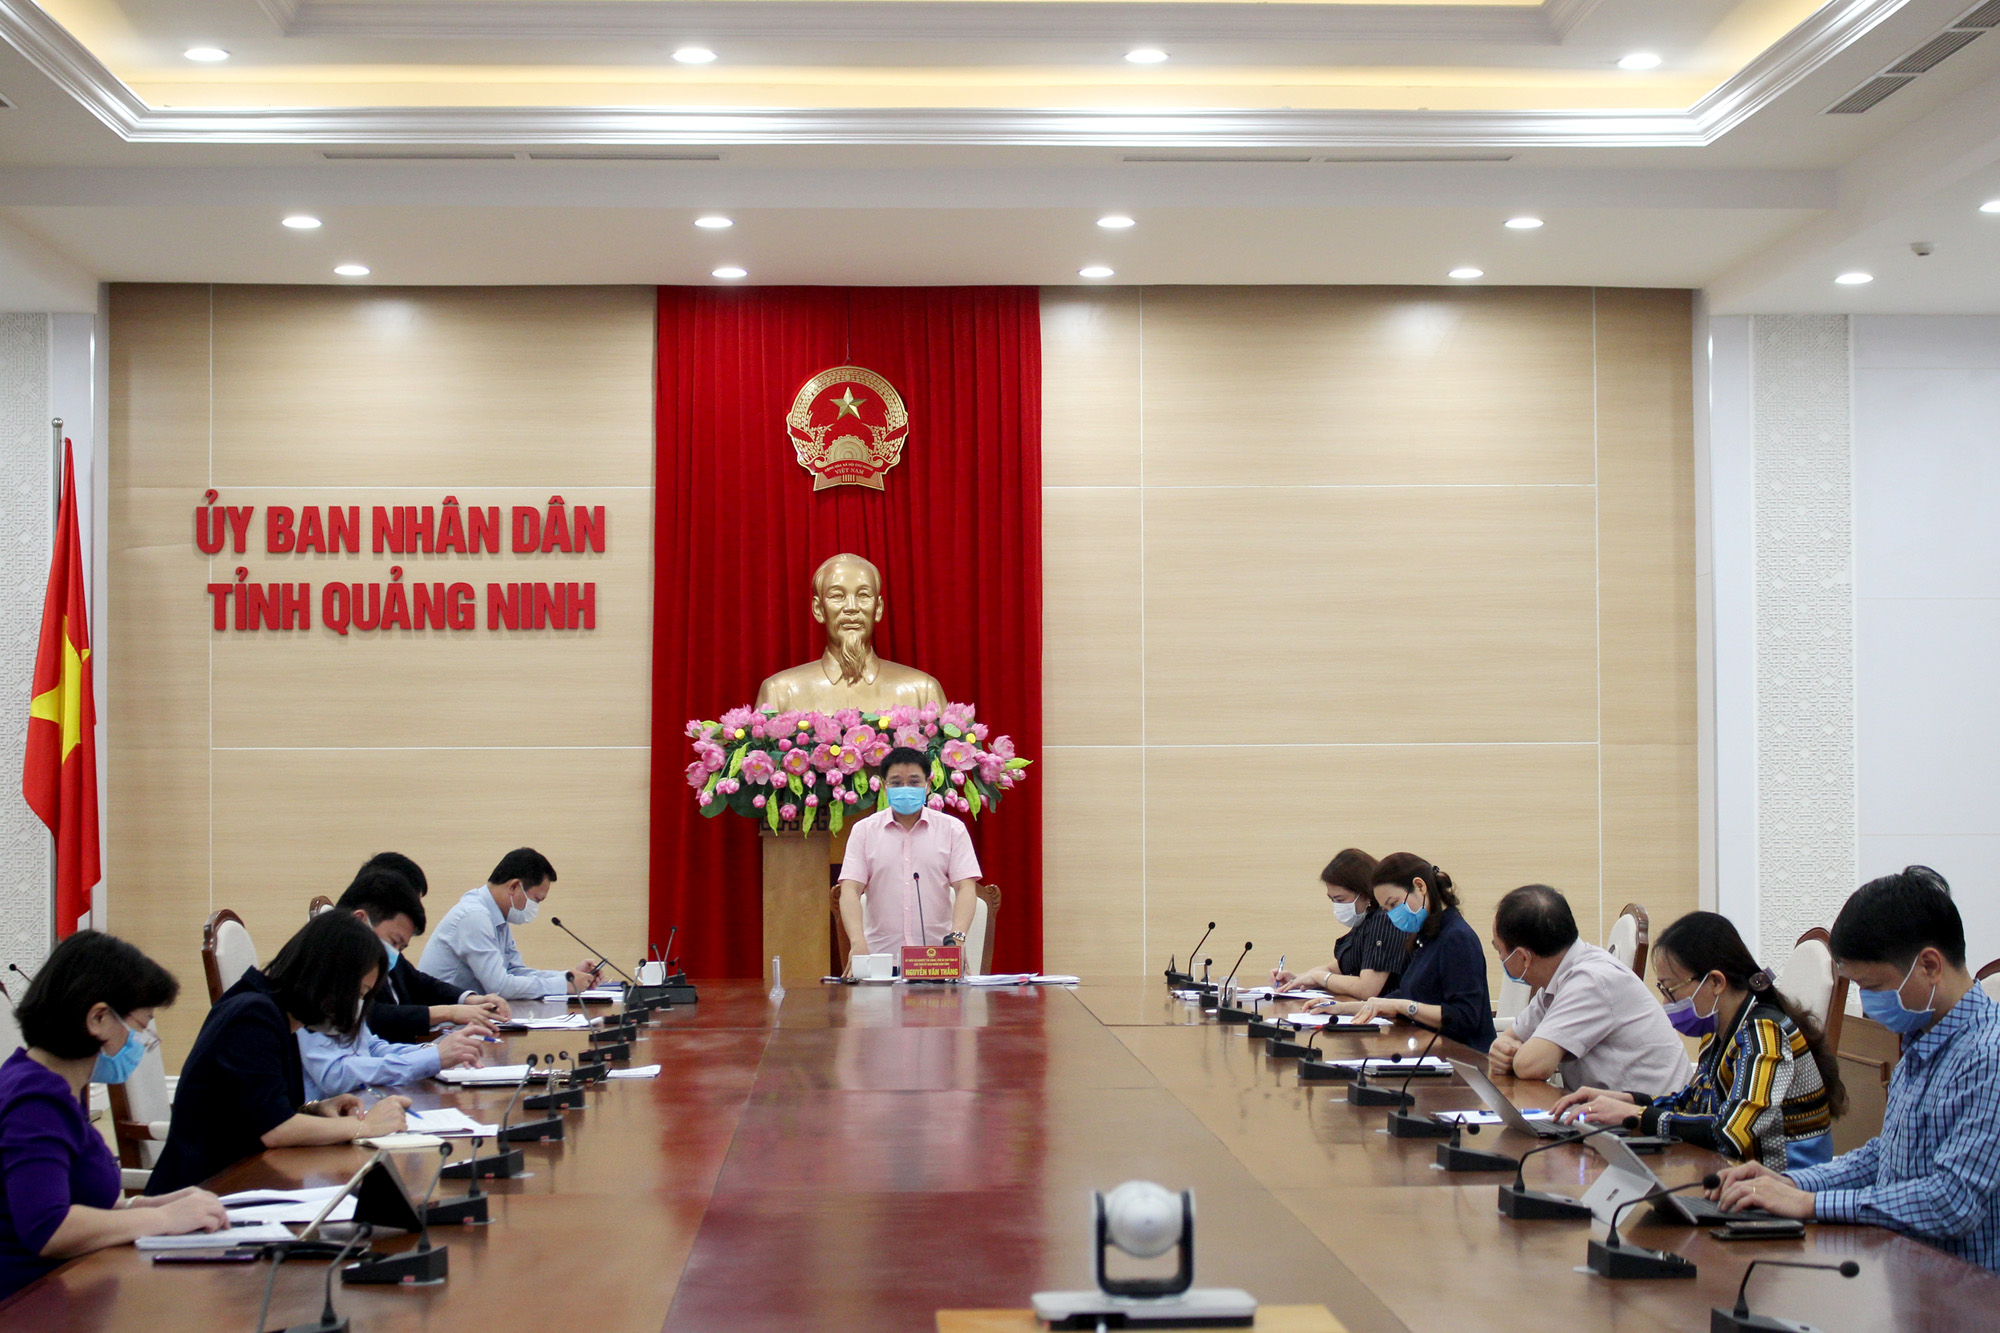 Đồng chí Nguyễn Văn Thắng, Chủ tịch UBND tỉnh, kết luận các nội dung trong cuộc họp.